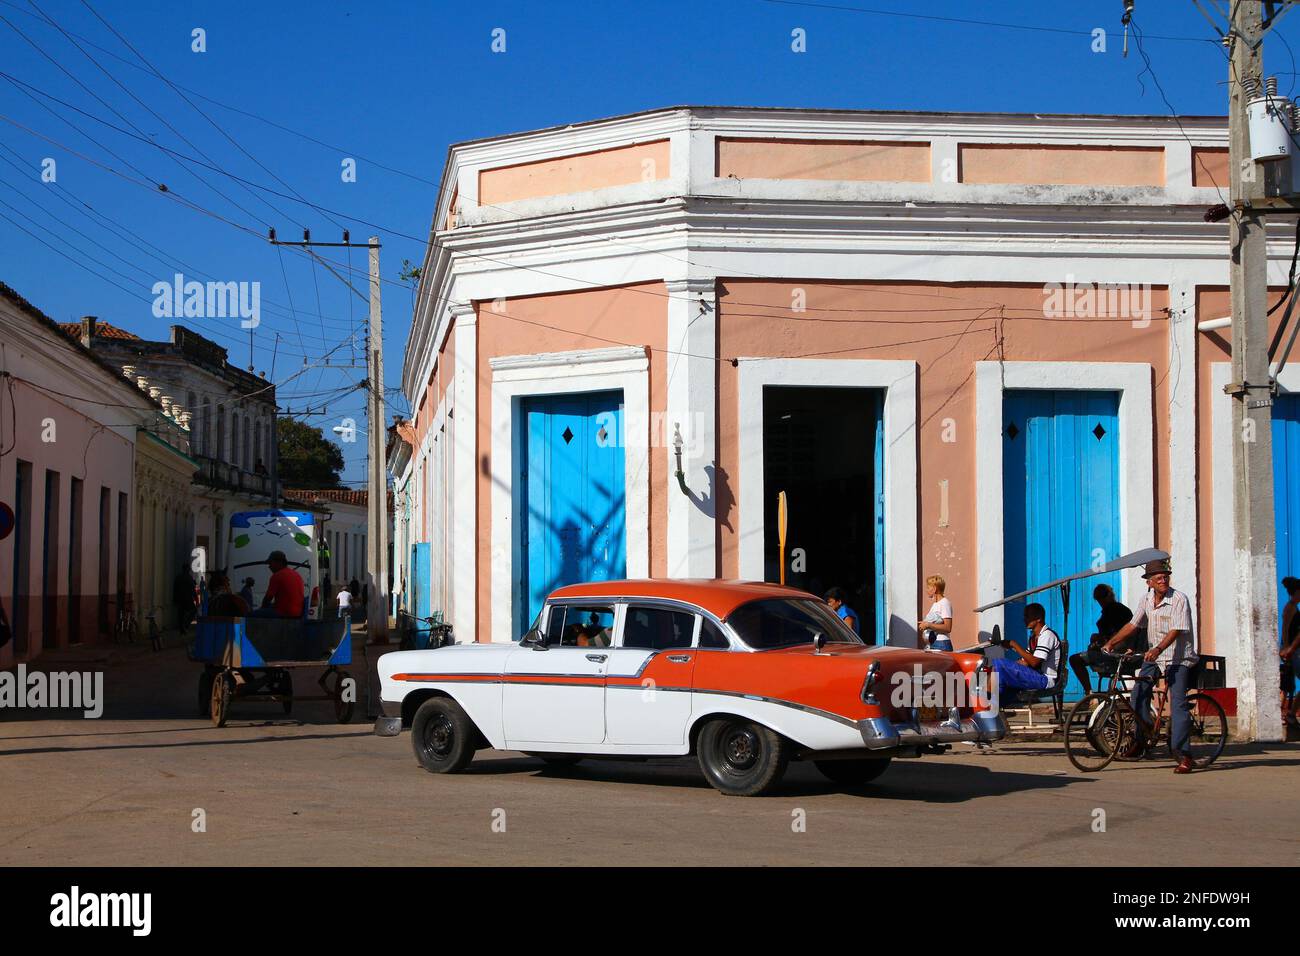 REMEDIOS, CUBA - 21 FEBBRAIO 2011: Vecchia auto americana a Remedios. Cuba ha uno dei tassi di proprietà più bassi a causa dell'embargo commerciale. Foto Stock